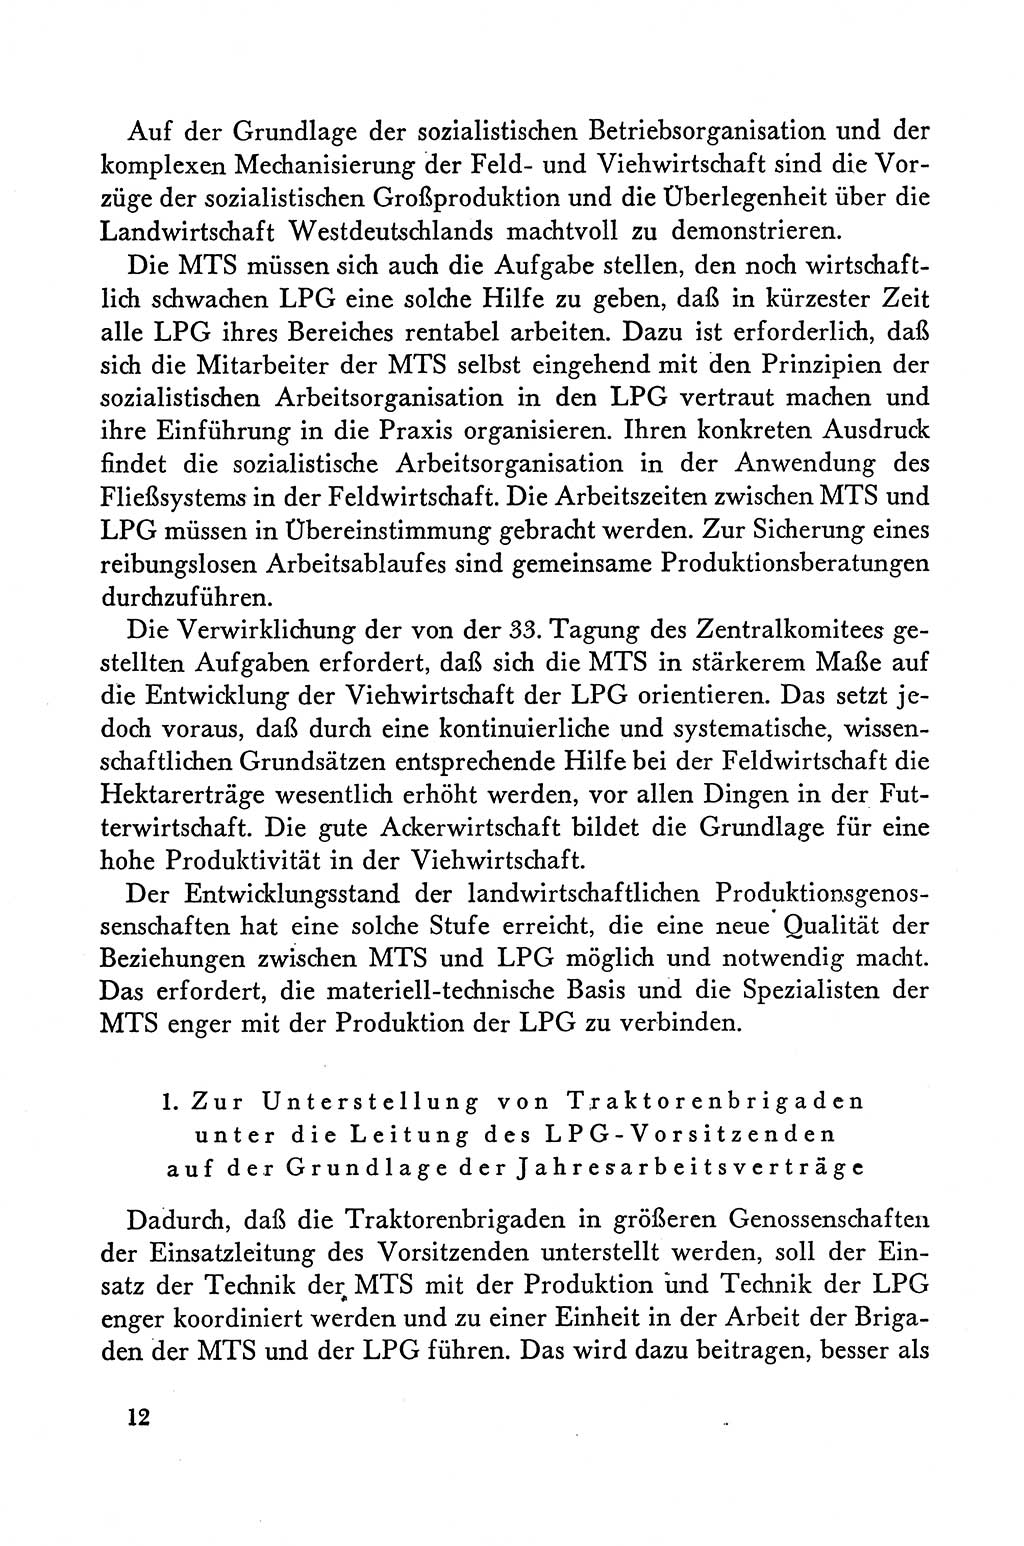 Dokumente der Sozialistischen Einheitspartei Deutschlands (SED) [Deutsche Demokratische Republik (DDR)] 1958-1959, Seite 12 (Dok. SED DDR 1958-1959, S. 12)